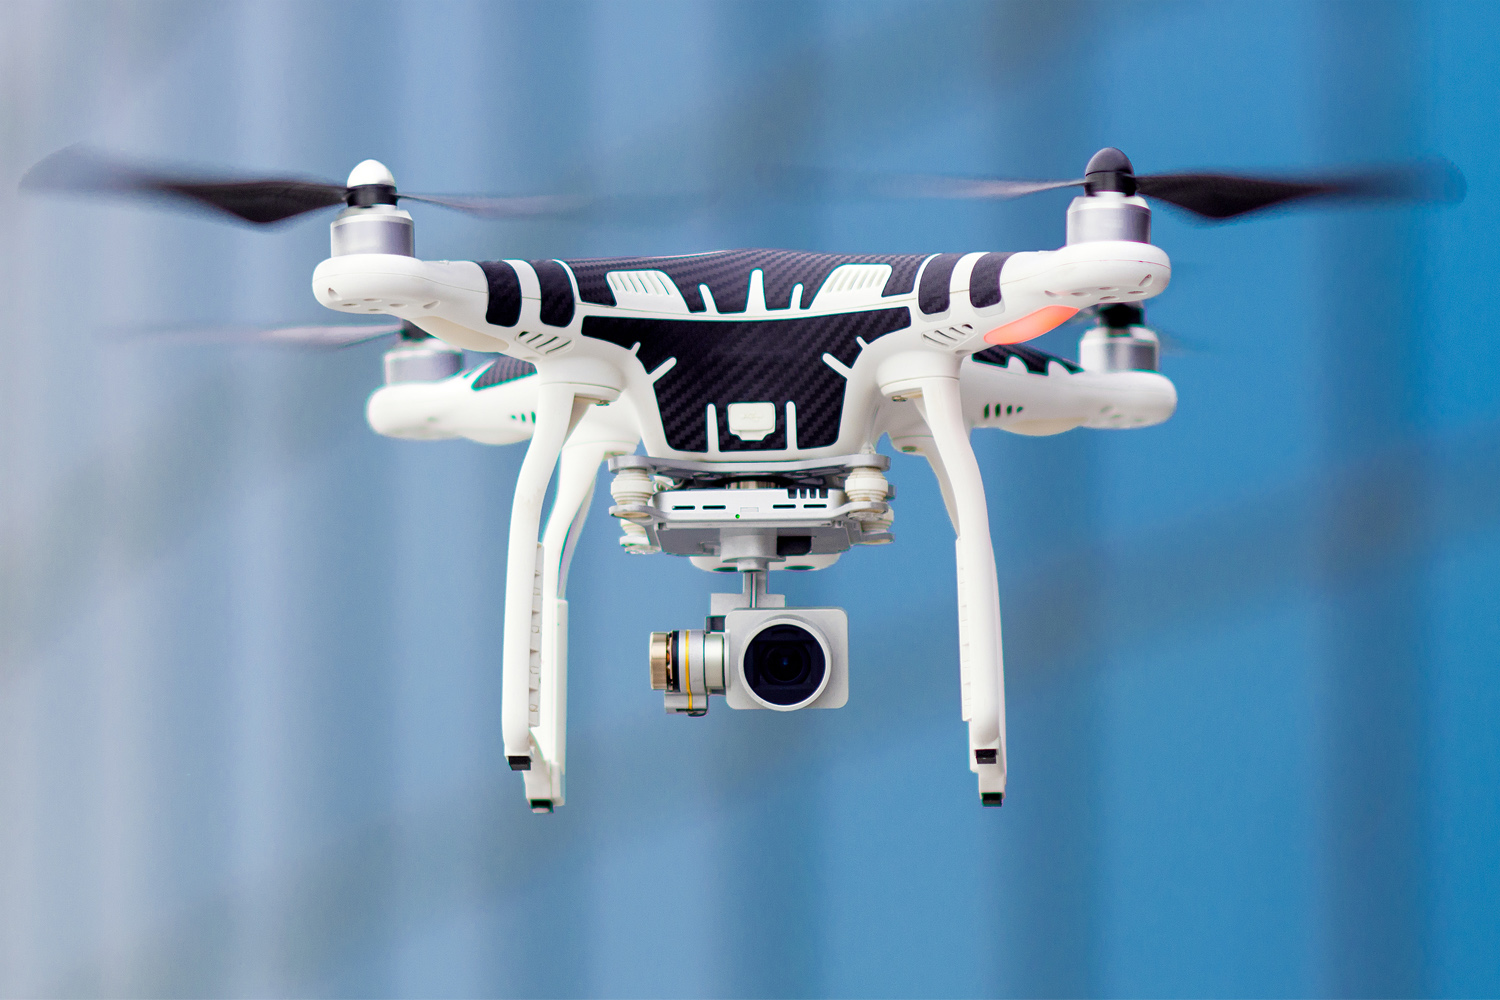 Estallar Muchas situaciones peligrosas Estado Drones y seguridad: La AESA presenta un Libro Blanco de I+D+i para drones